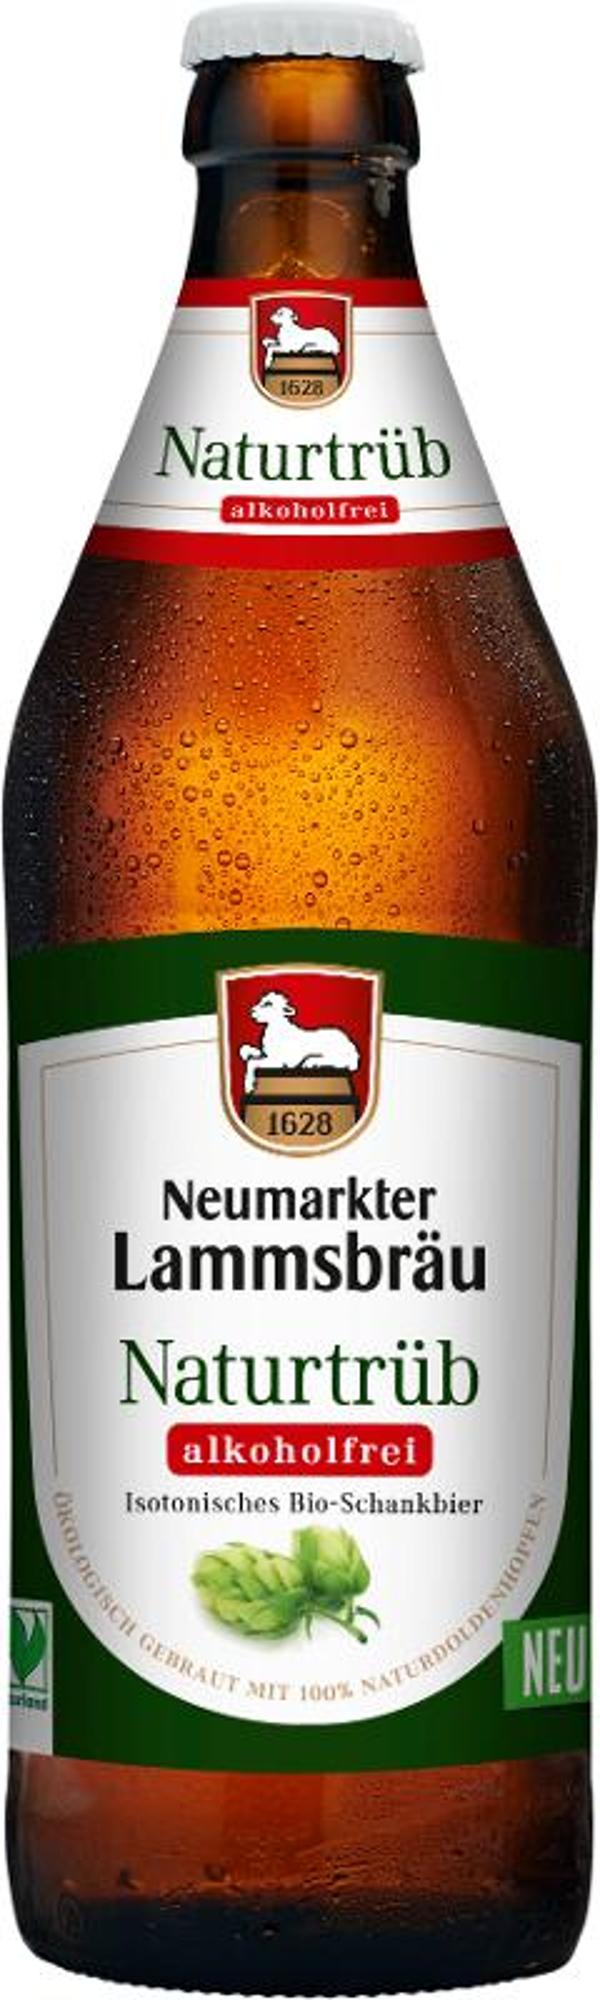 Produktfoto zu Lammsbräu Naturtrüb alkoholfrei